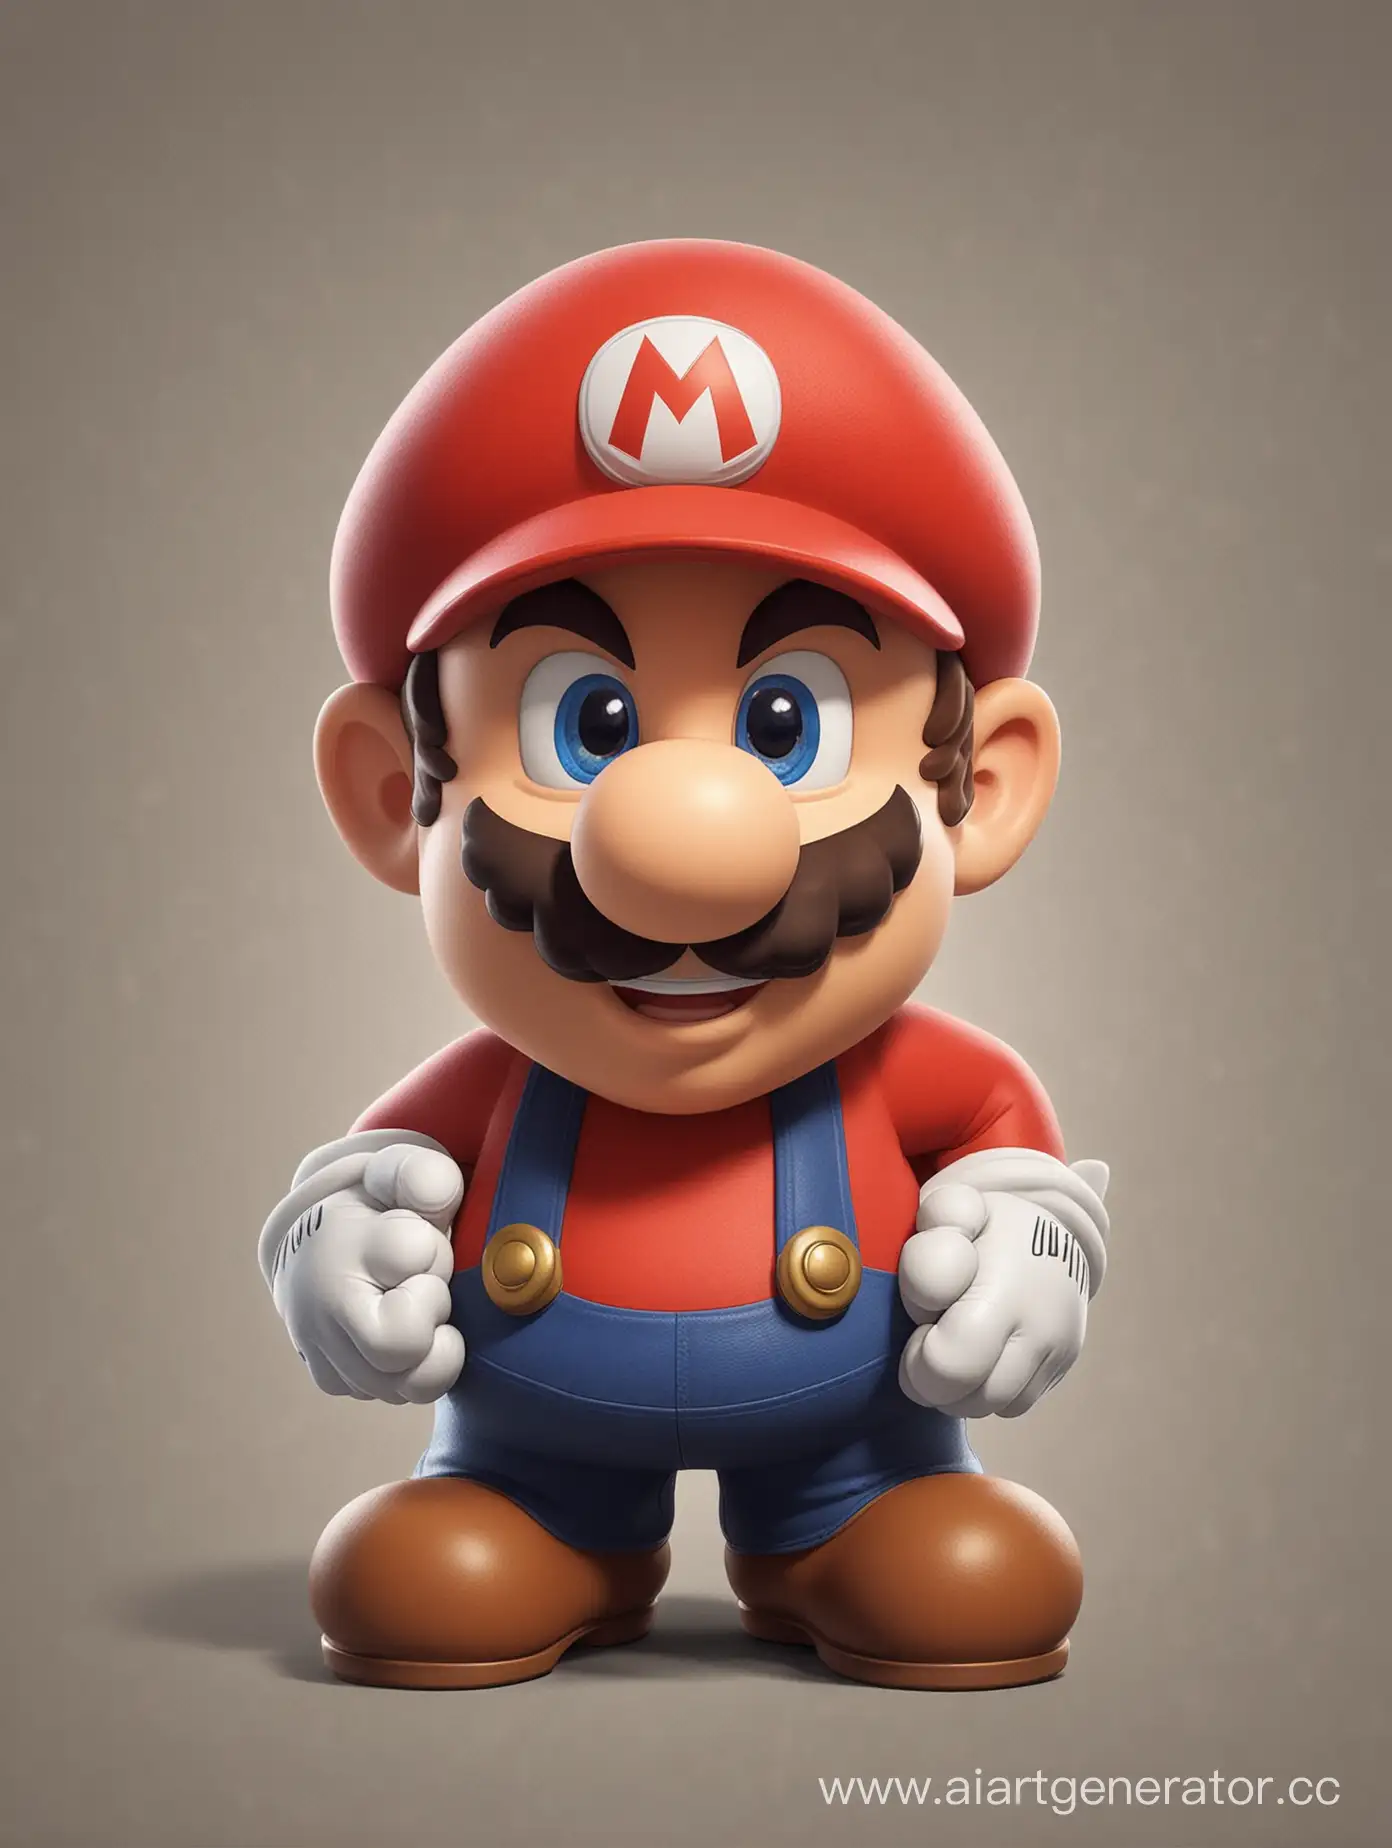 Colorful-Cartoon-Character-Mario-in-Fantasy-Adventure